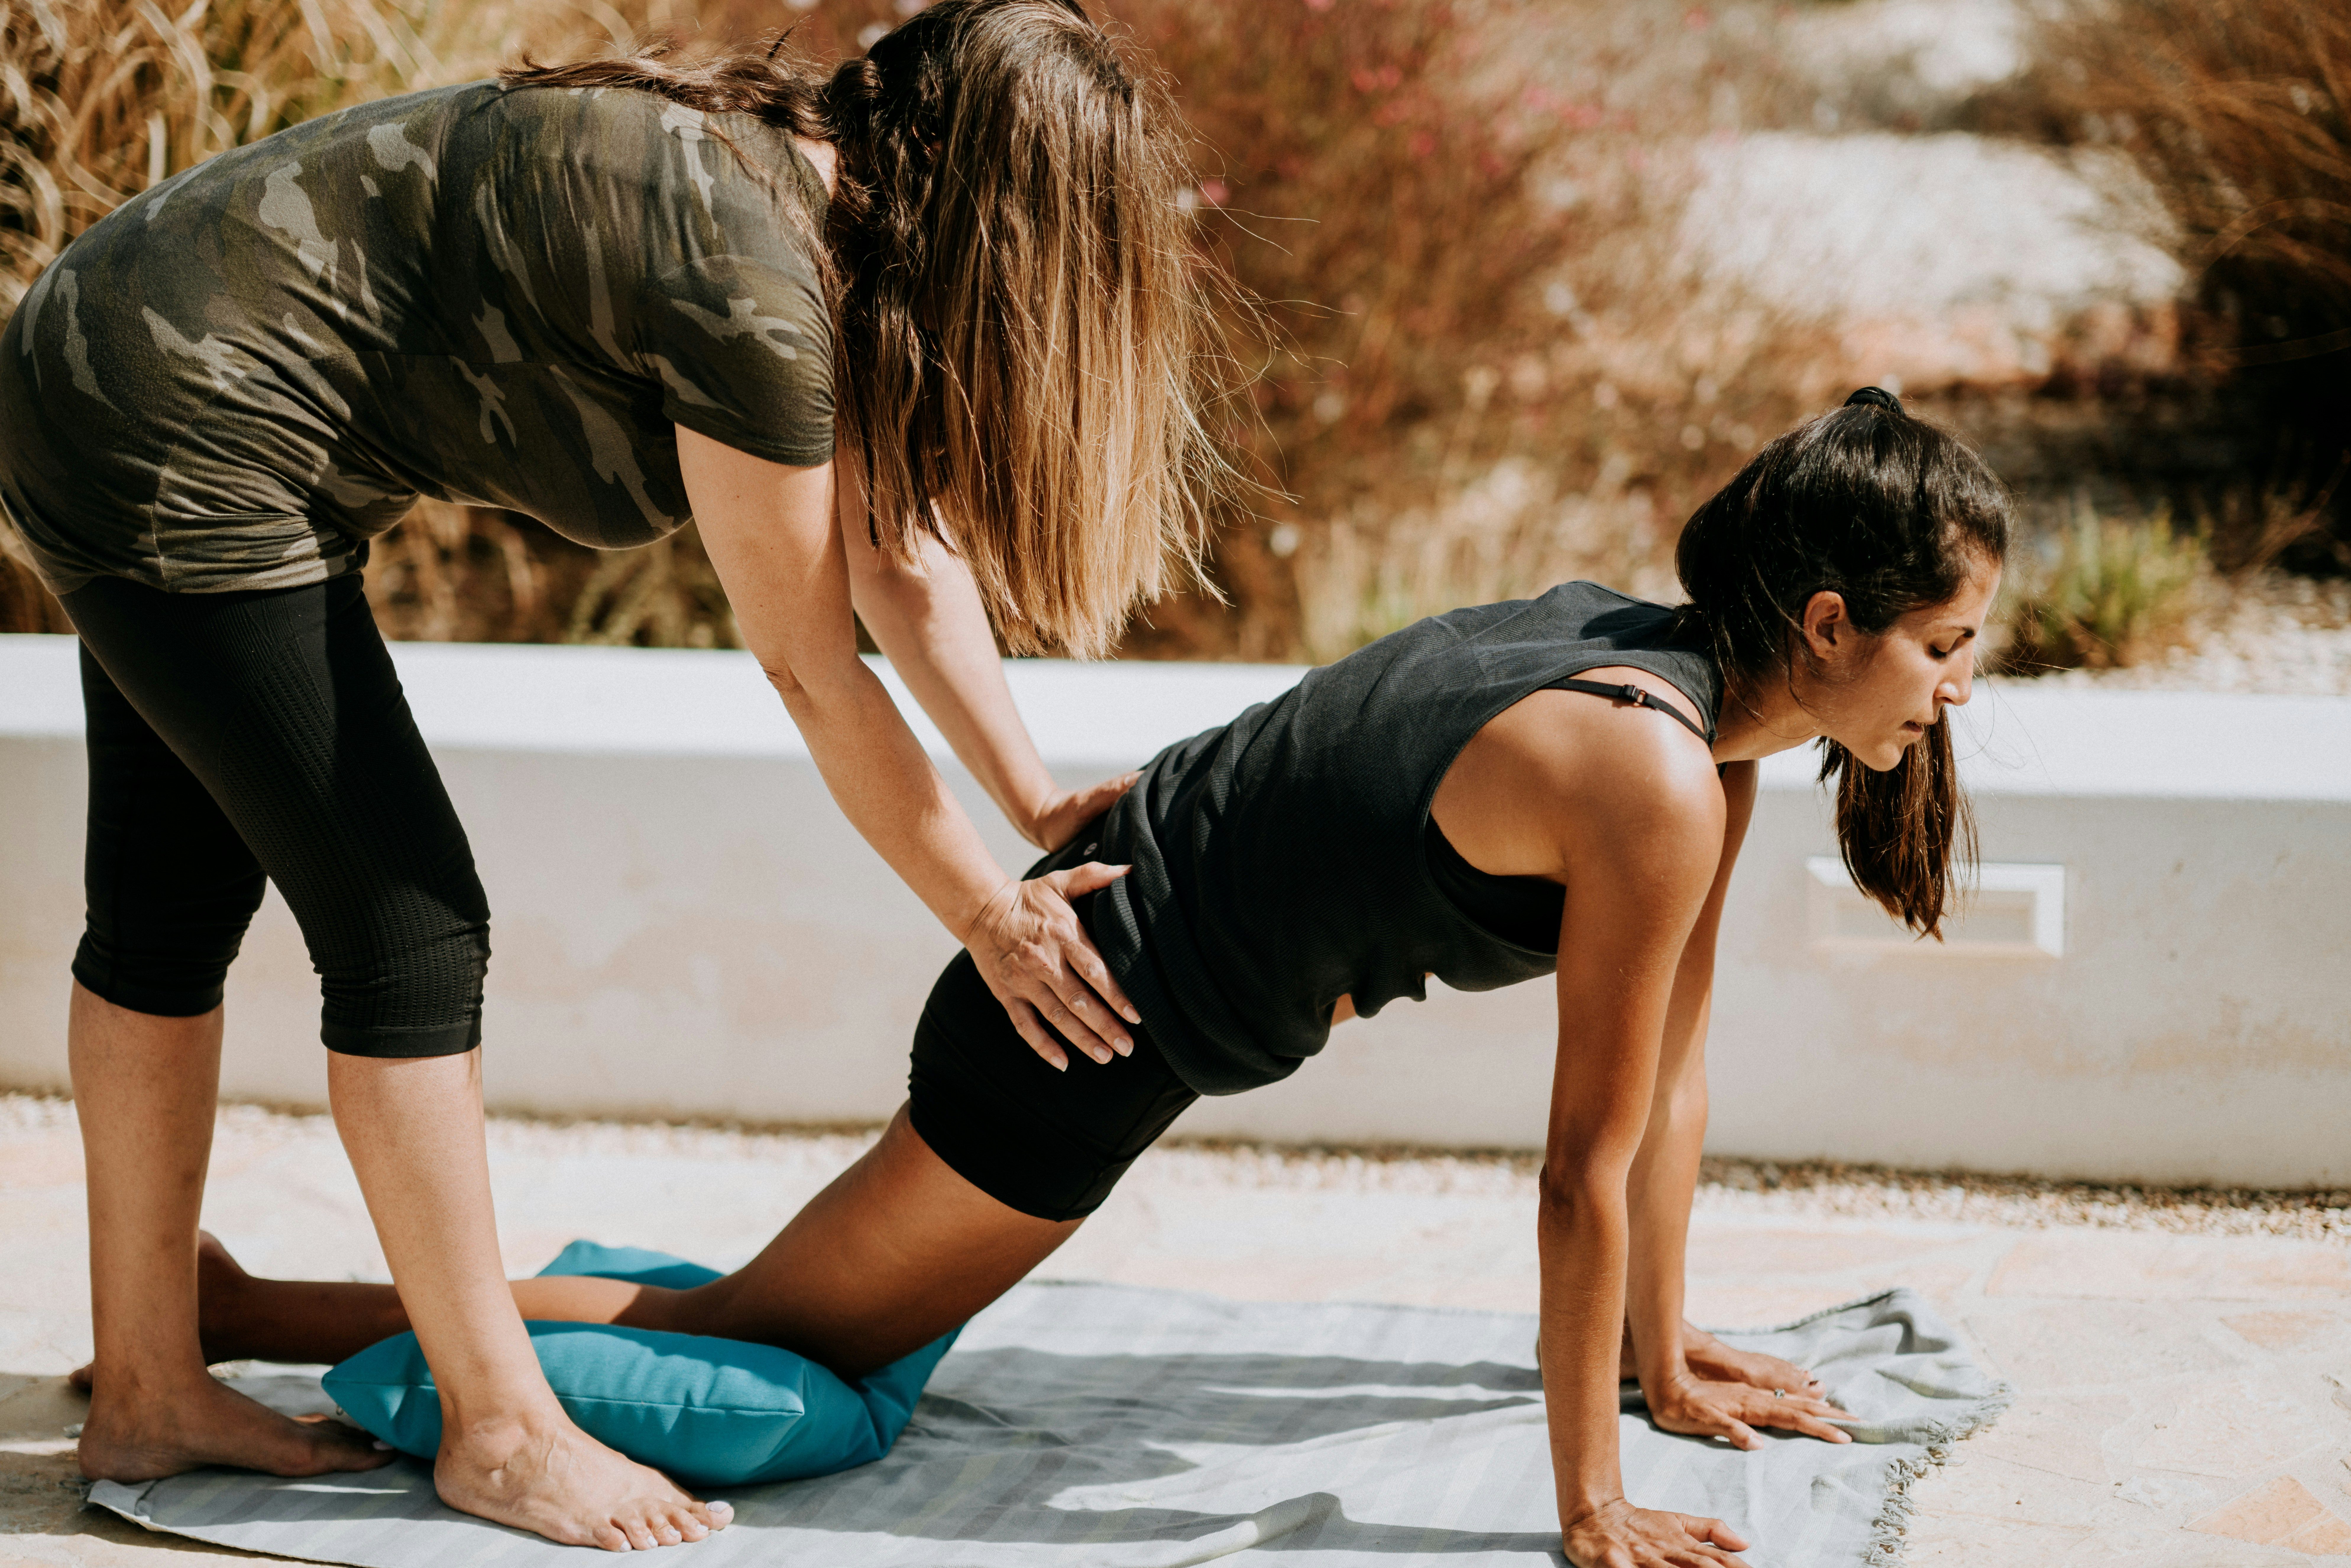 découvrez les bienfaits du yoga avec un instructeur expérimenté. apprenez à pratiquer le yoga pour améliorer votre bien-être physique et mental.